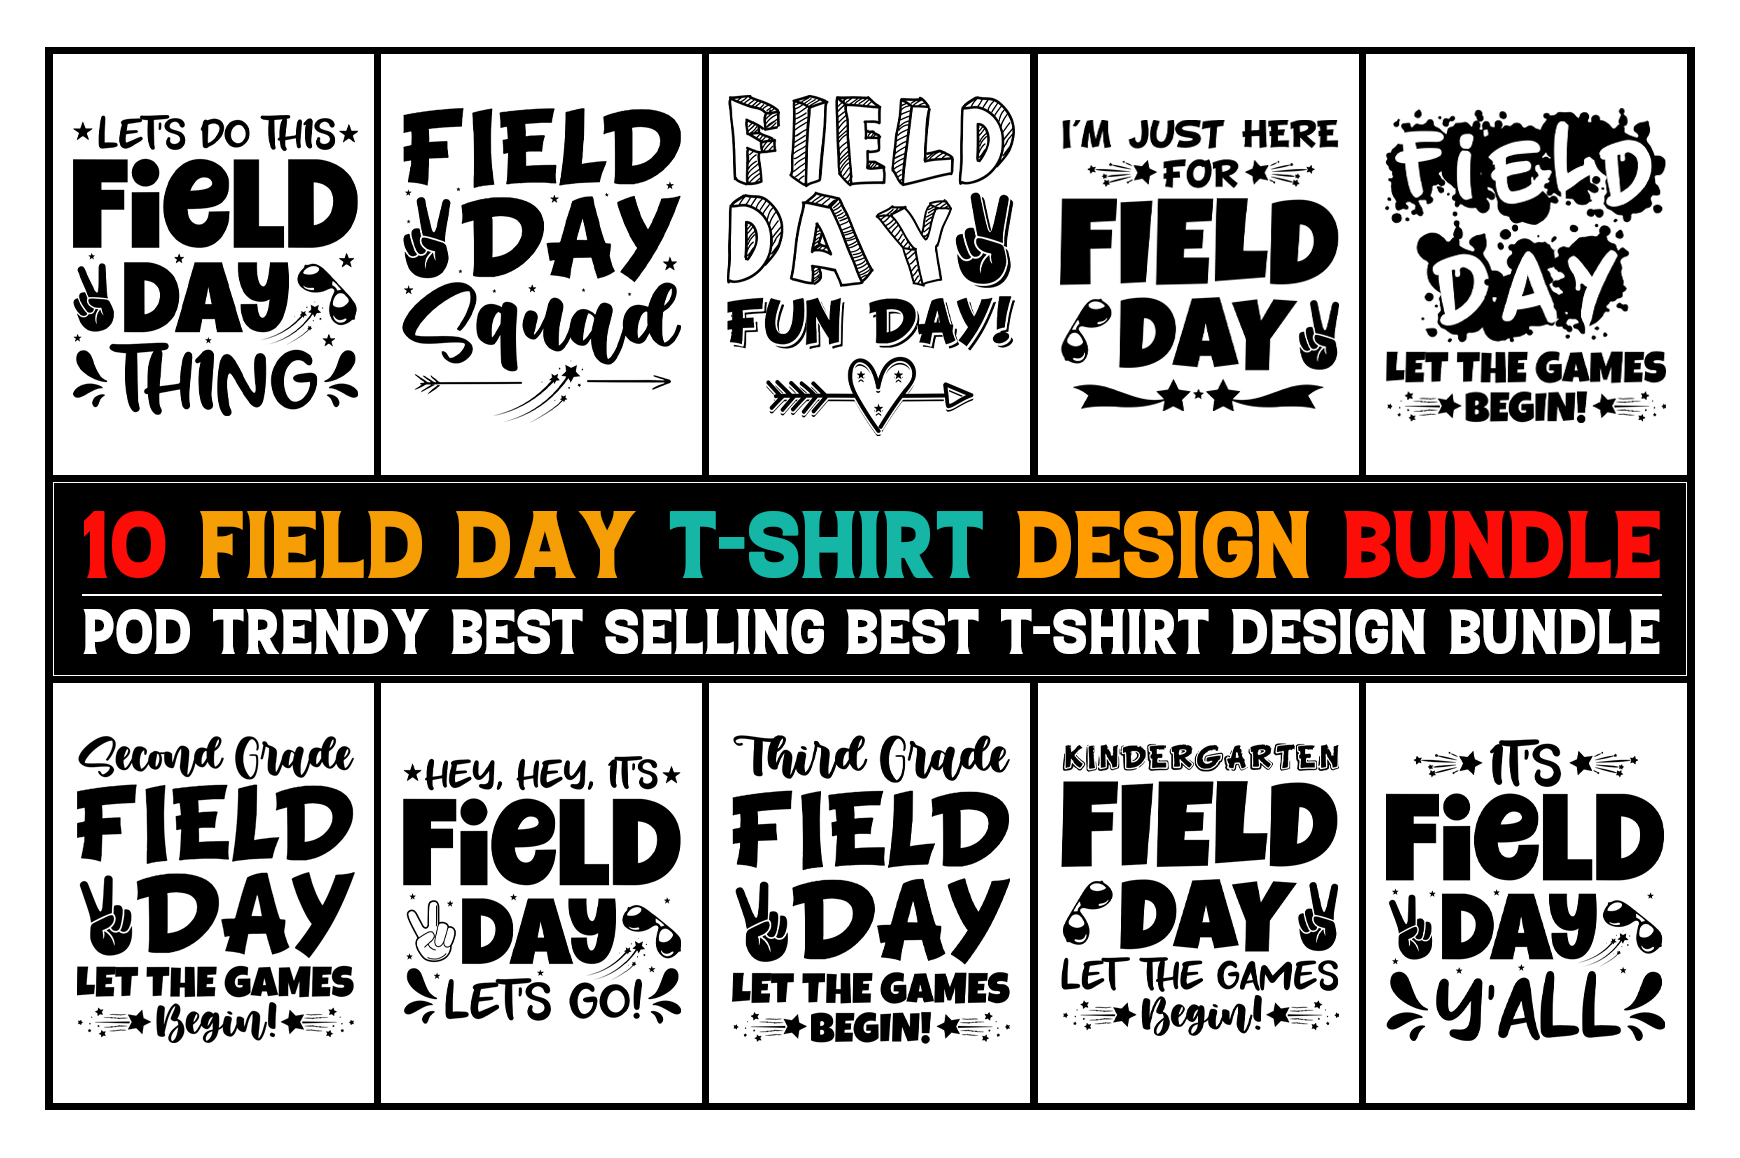 Field Day,Field Day TShirt,Field Day TShirt Design,Field Day TShirt ...